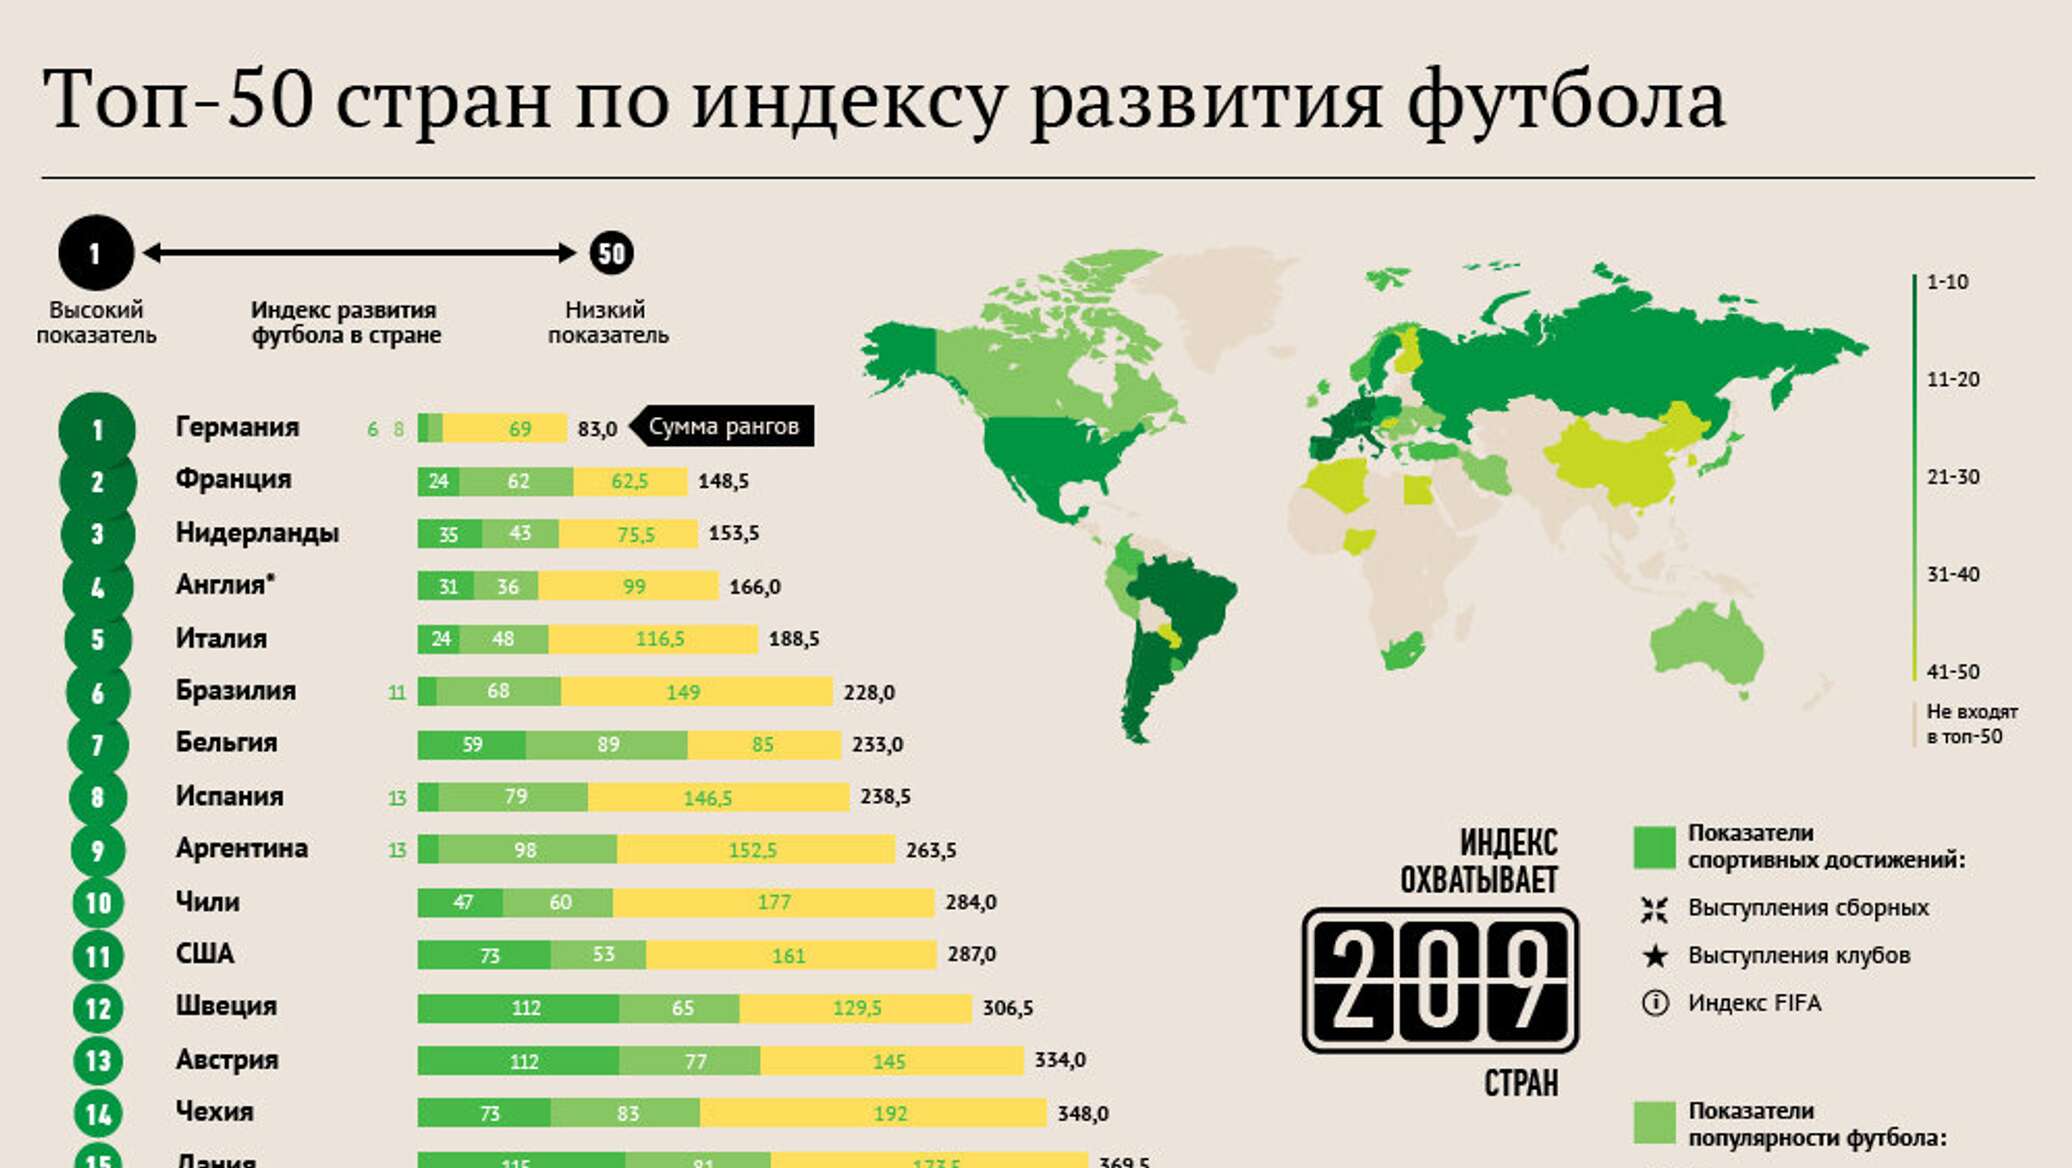 Сколько в мире андреев. Популярность футбола в мире статистика. Топ стран по развитию. Топ стран по футболу в мире. Популярность футбола в России.